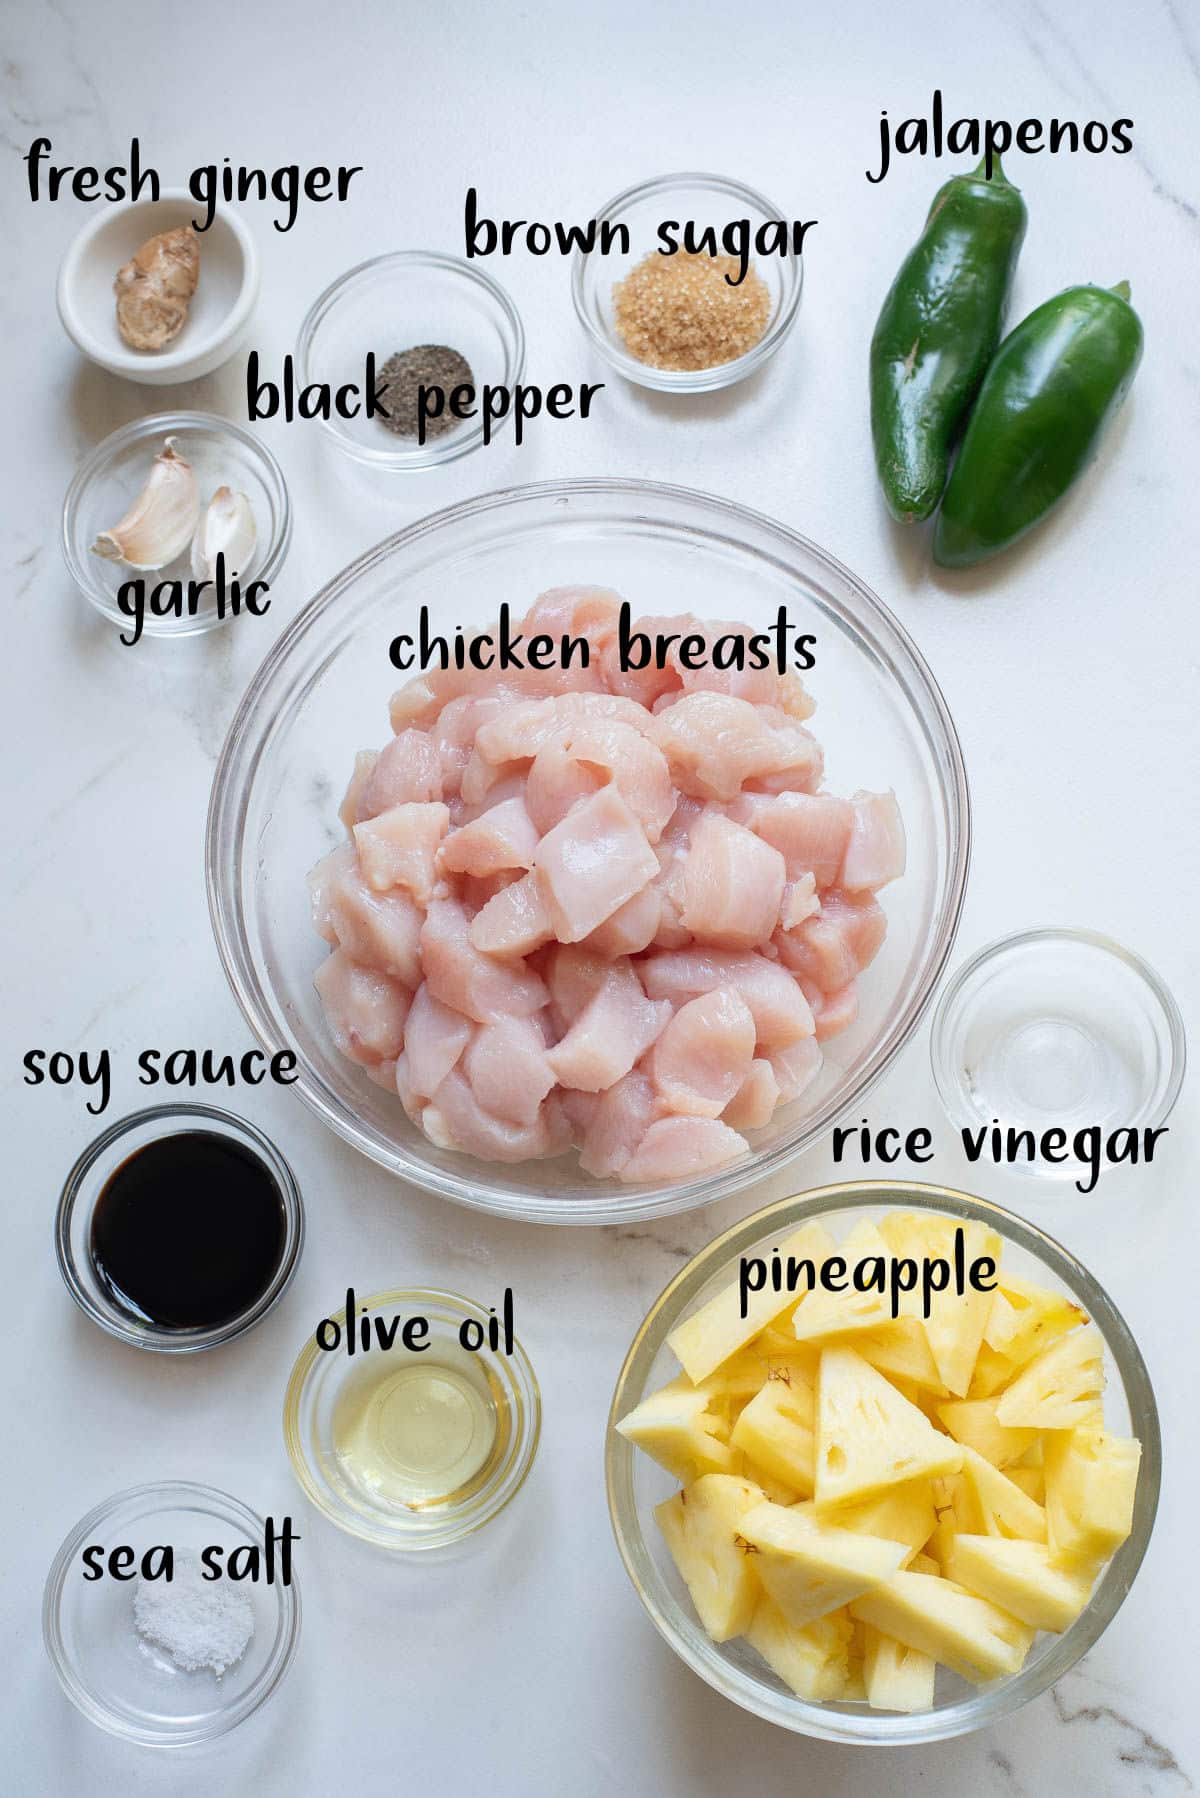 Ingredients for spicy chicken stir fry.